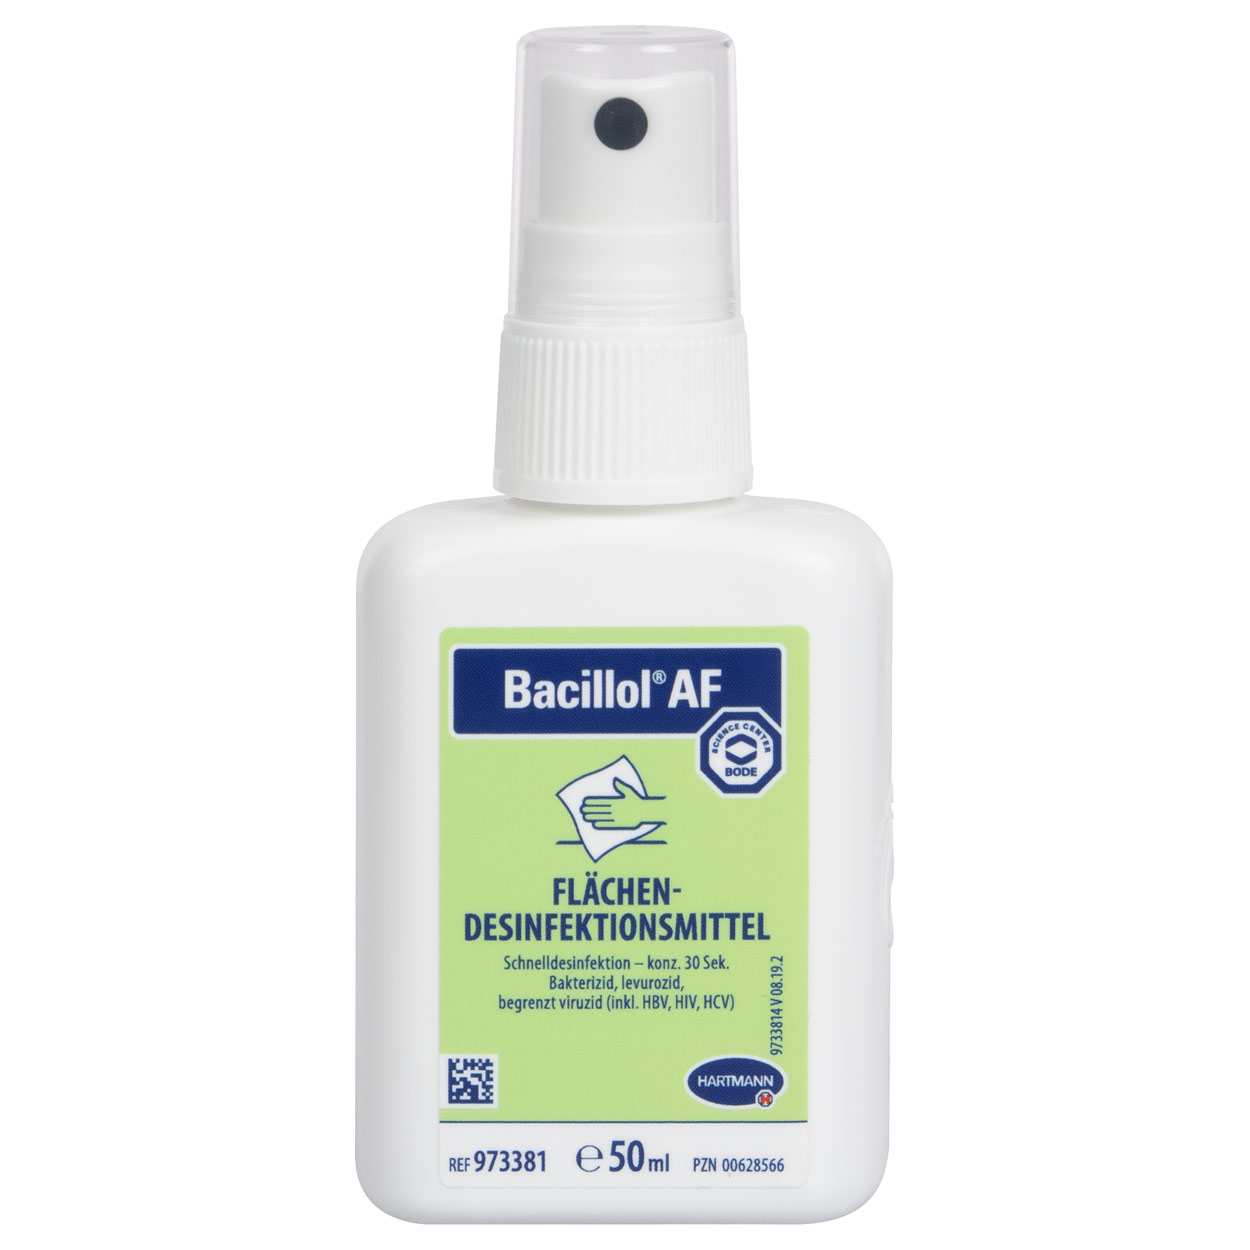 Bacillol AF Flächen-Desinfektionsmittel Desinfektionsreiniger 50 ml Sprühflasche